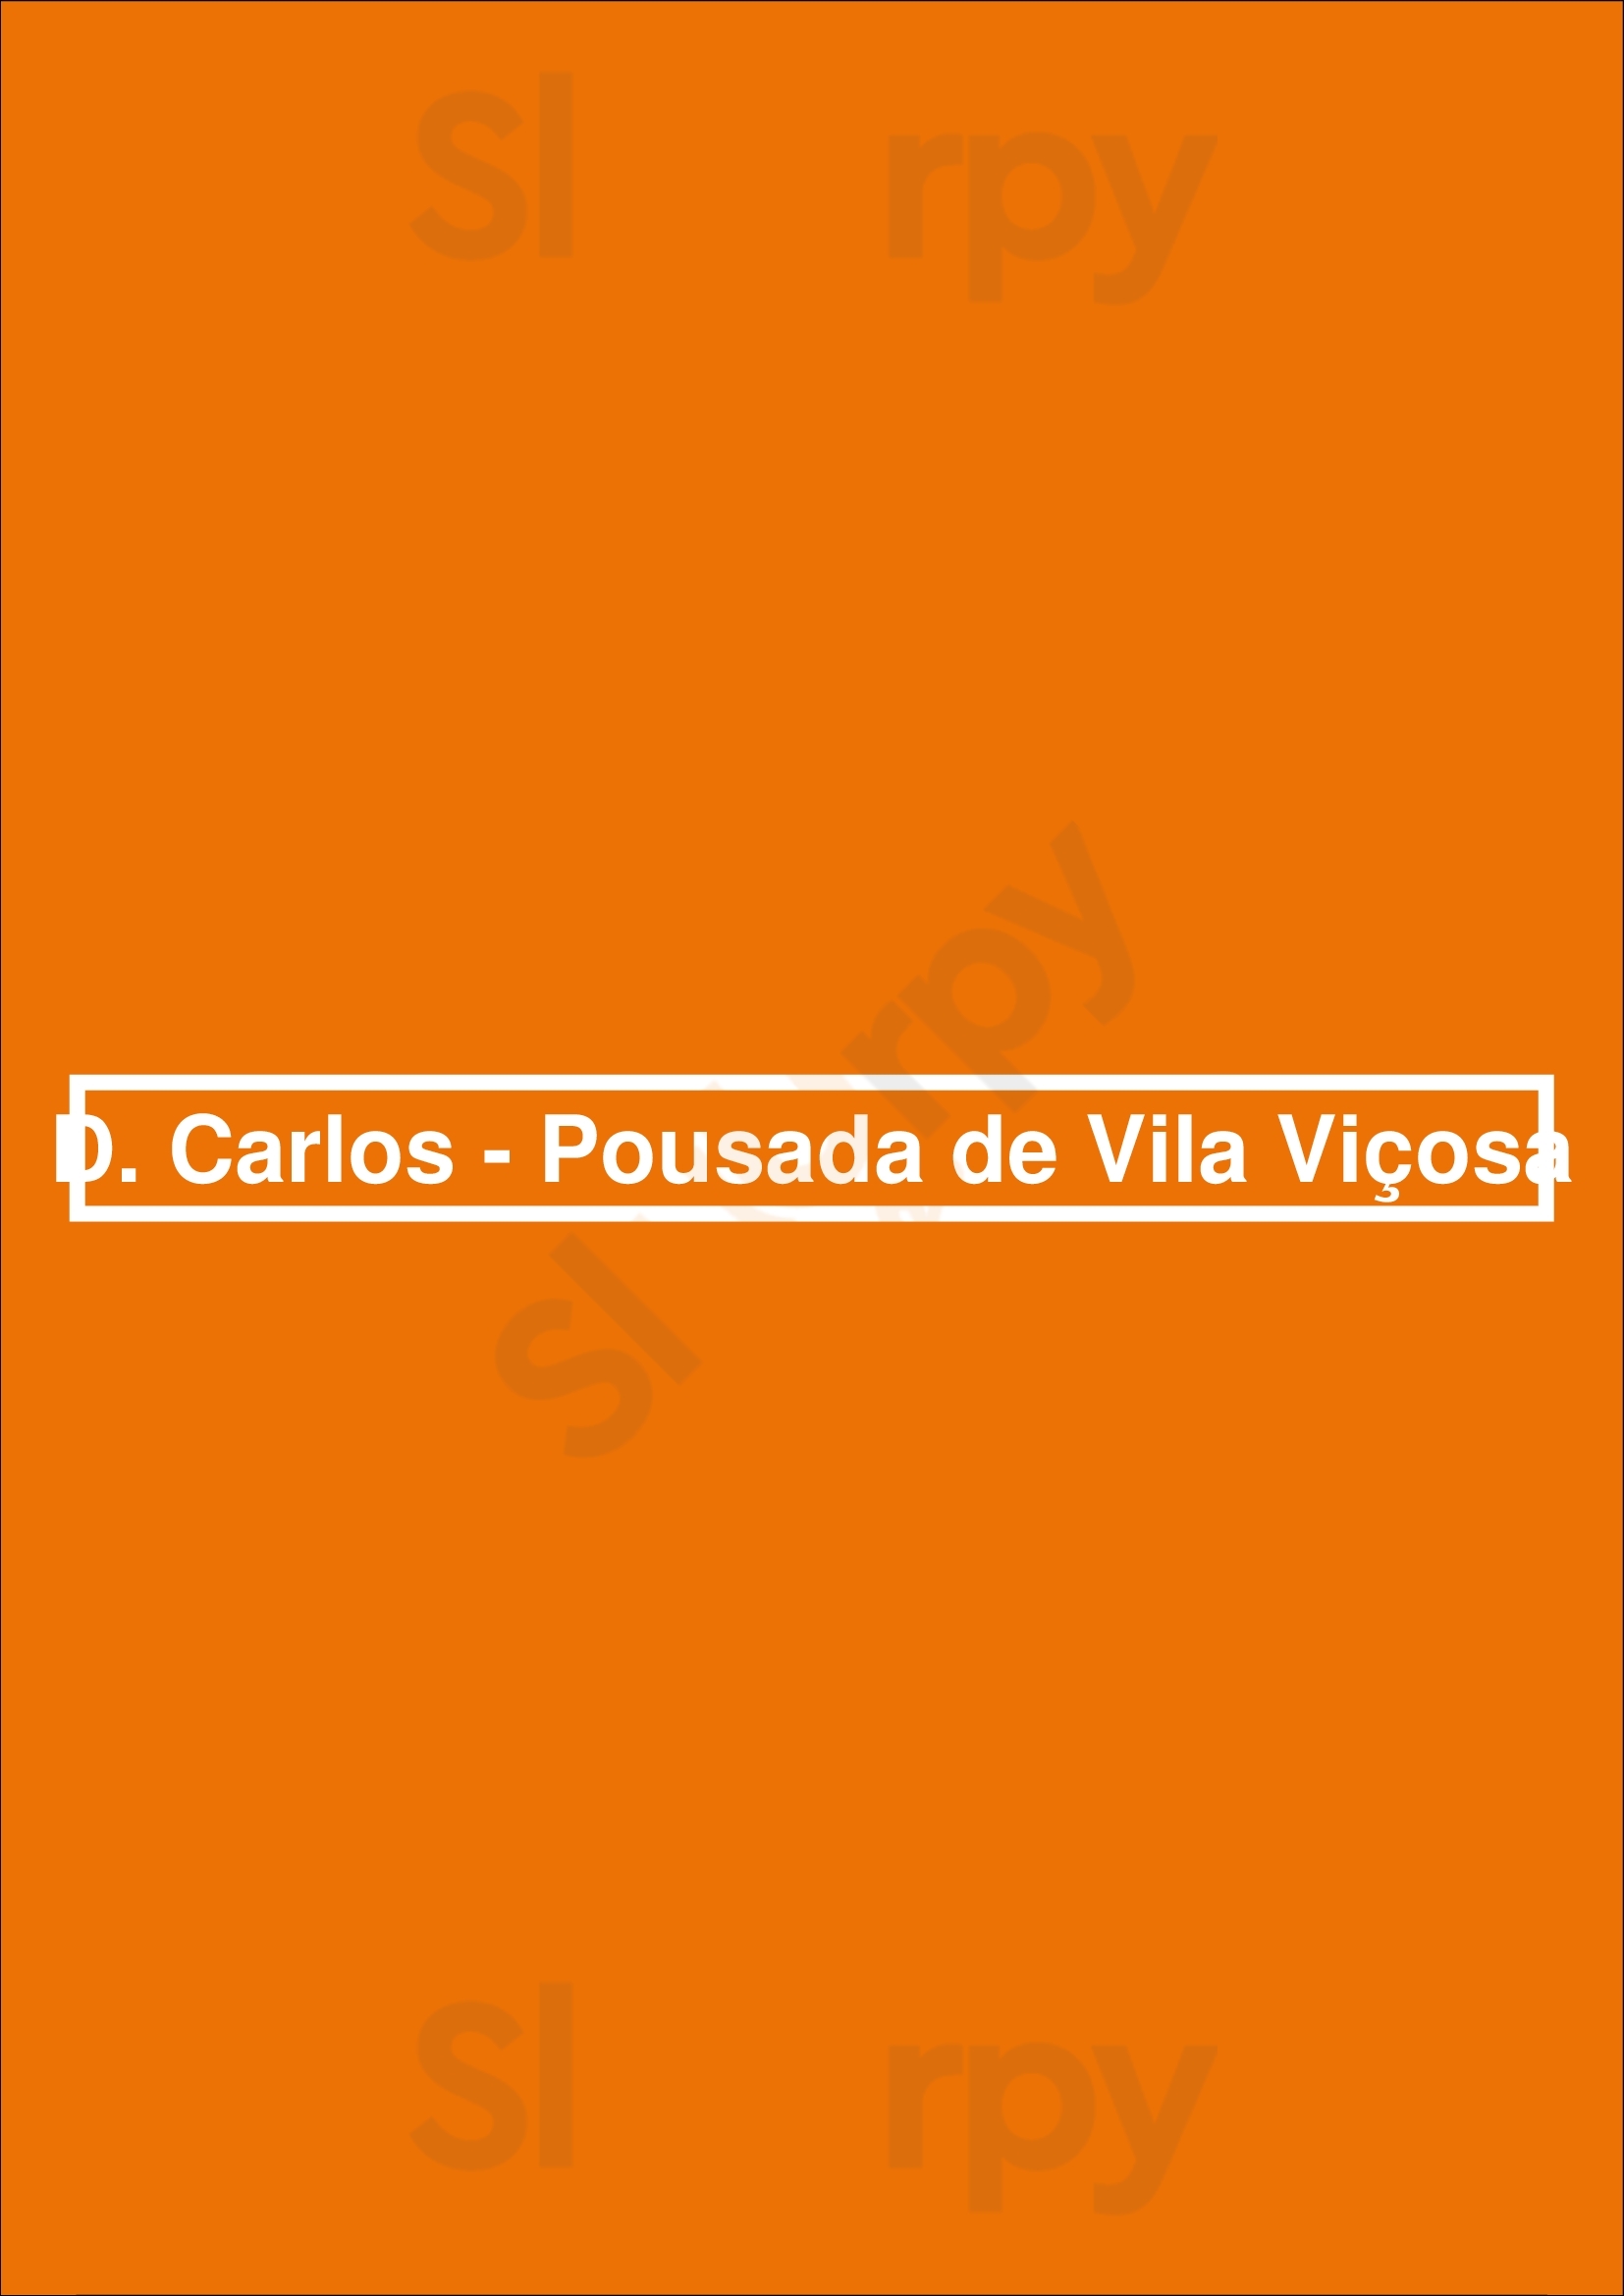 D. Carlos - Pousada De Vila Viçosa Vila Vicosa Menu - 1